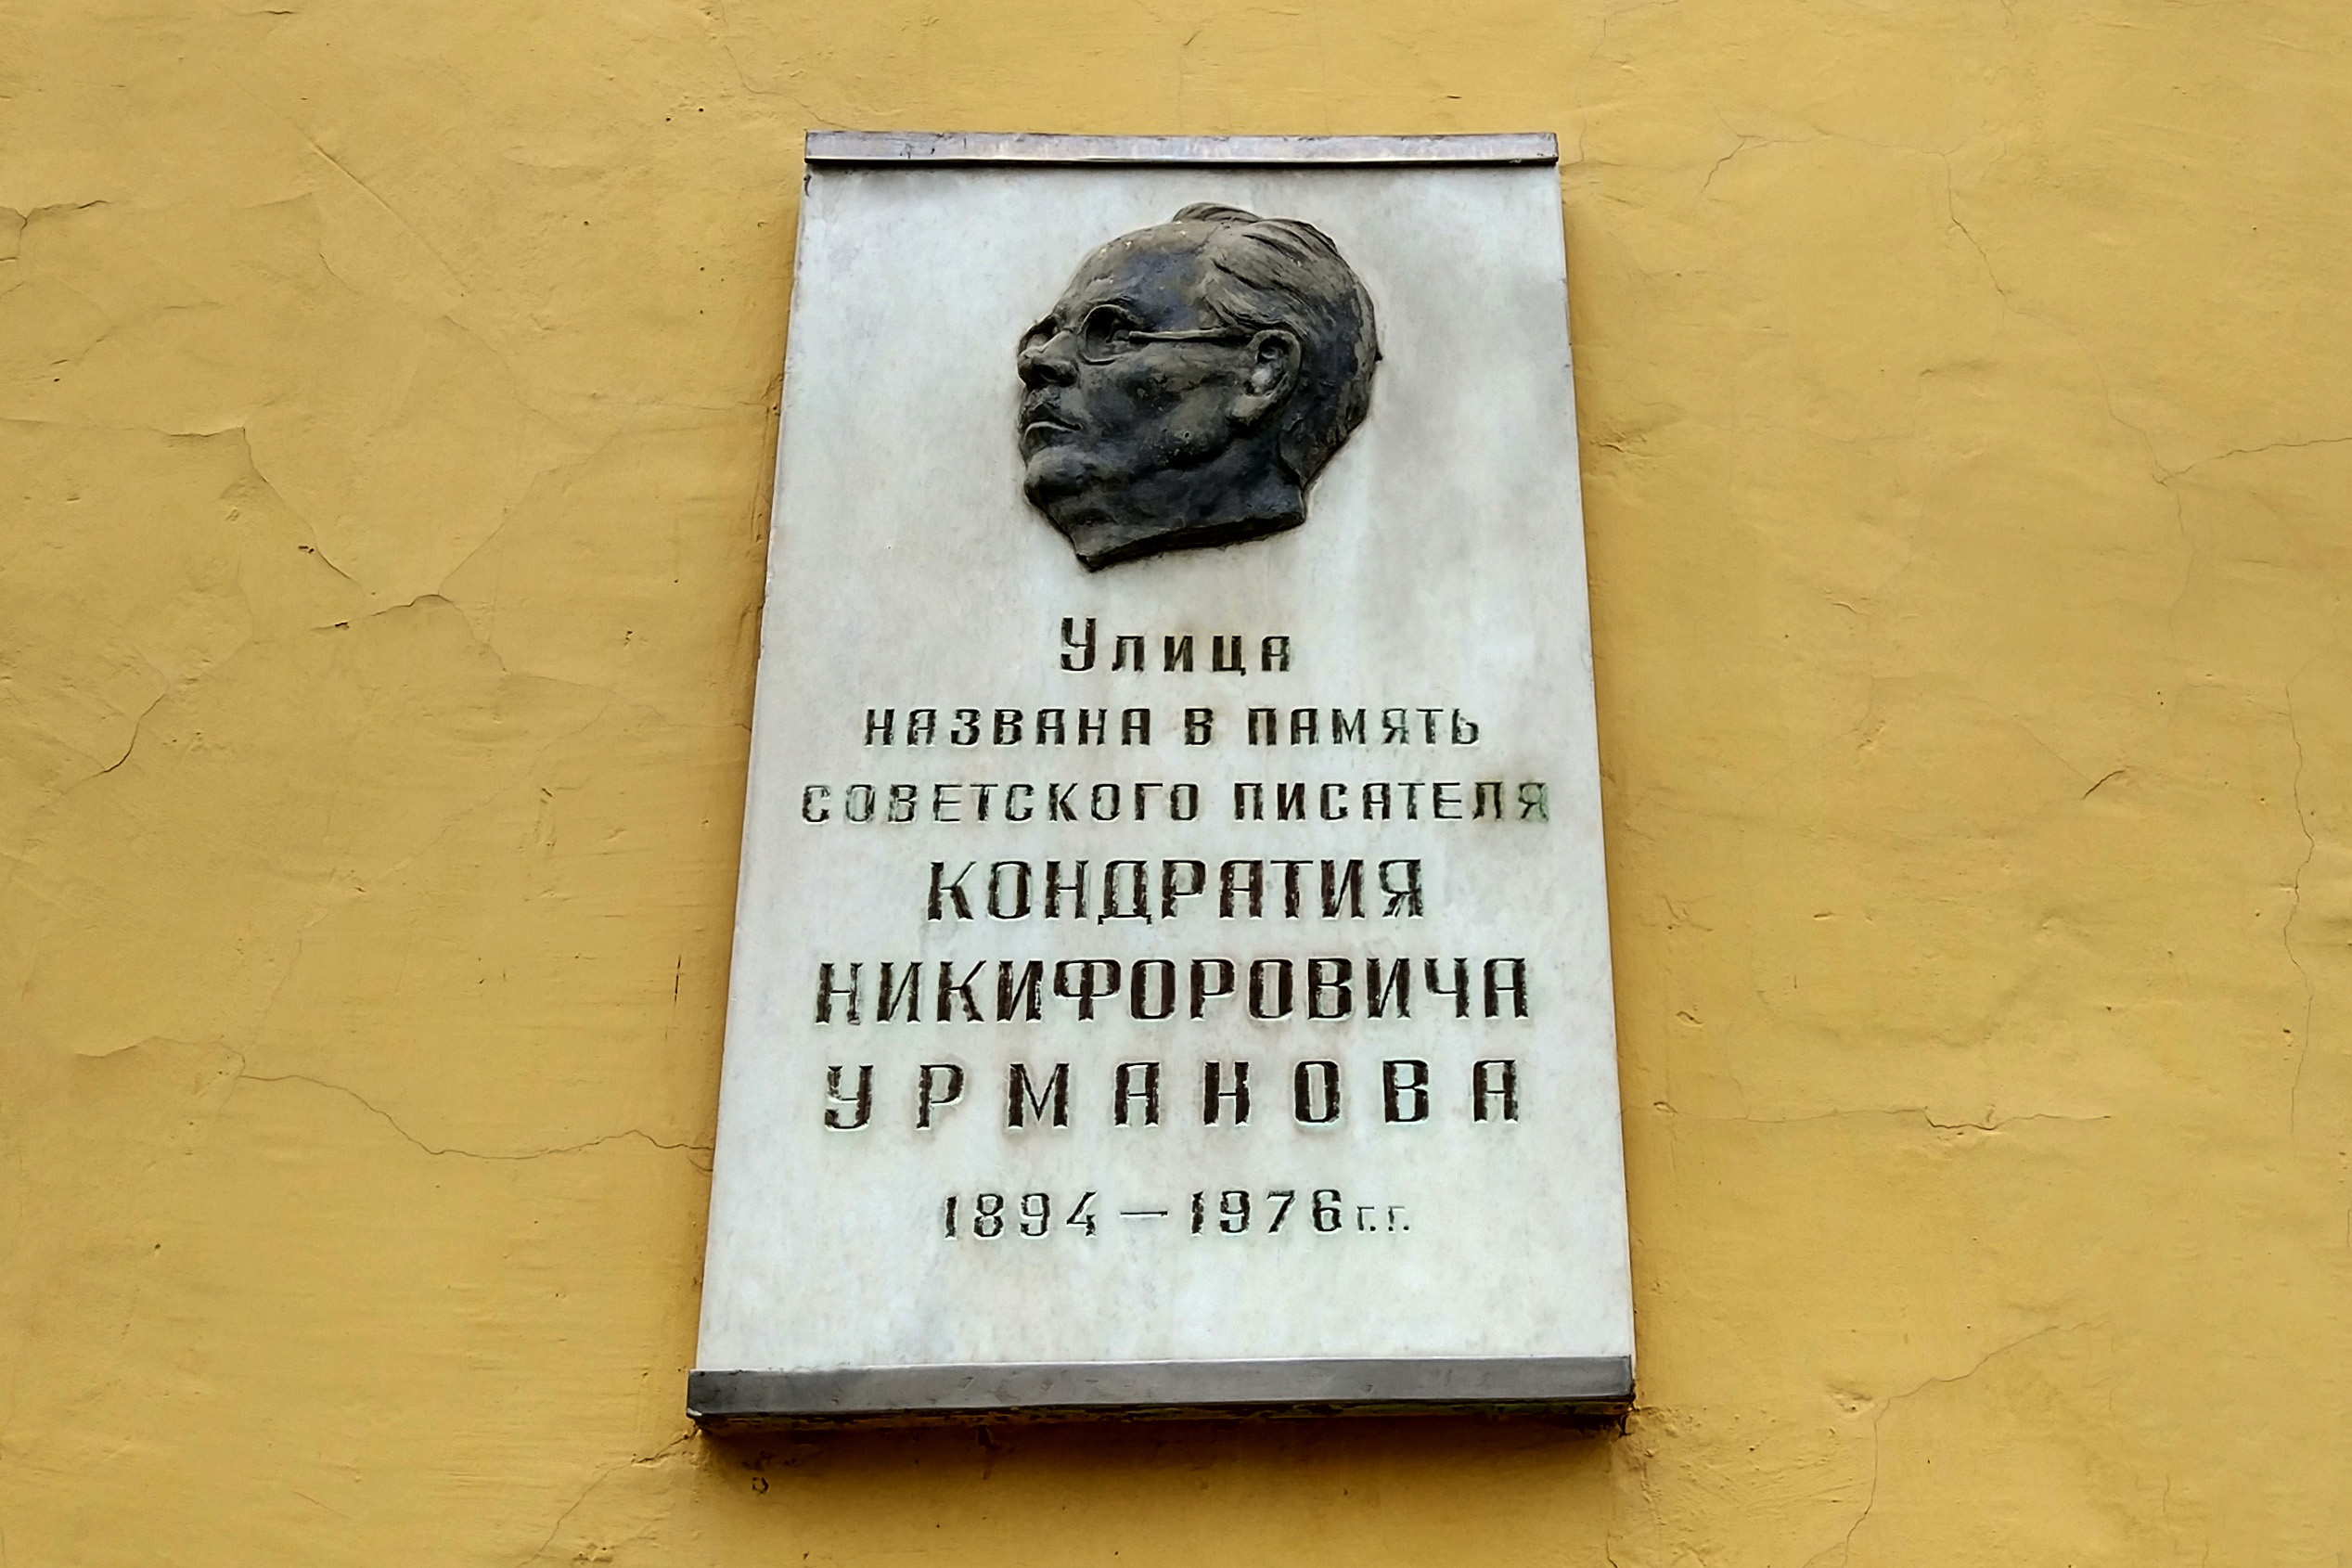 Мемориальная доска, посвященная Кондратию Урманову